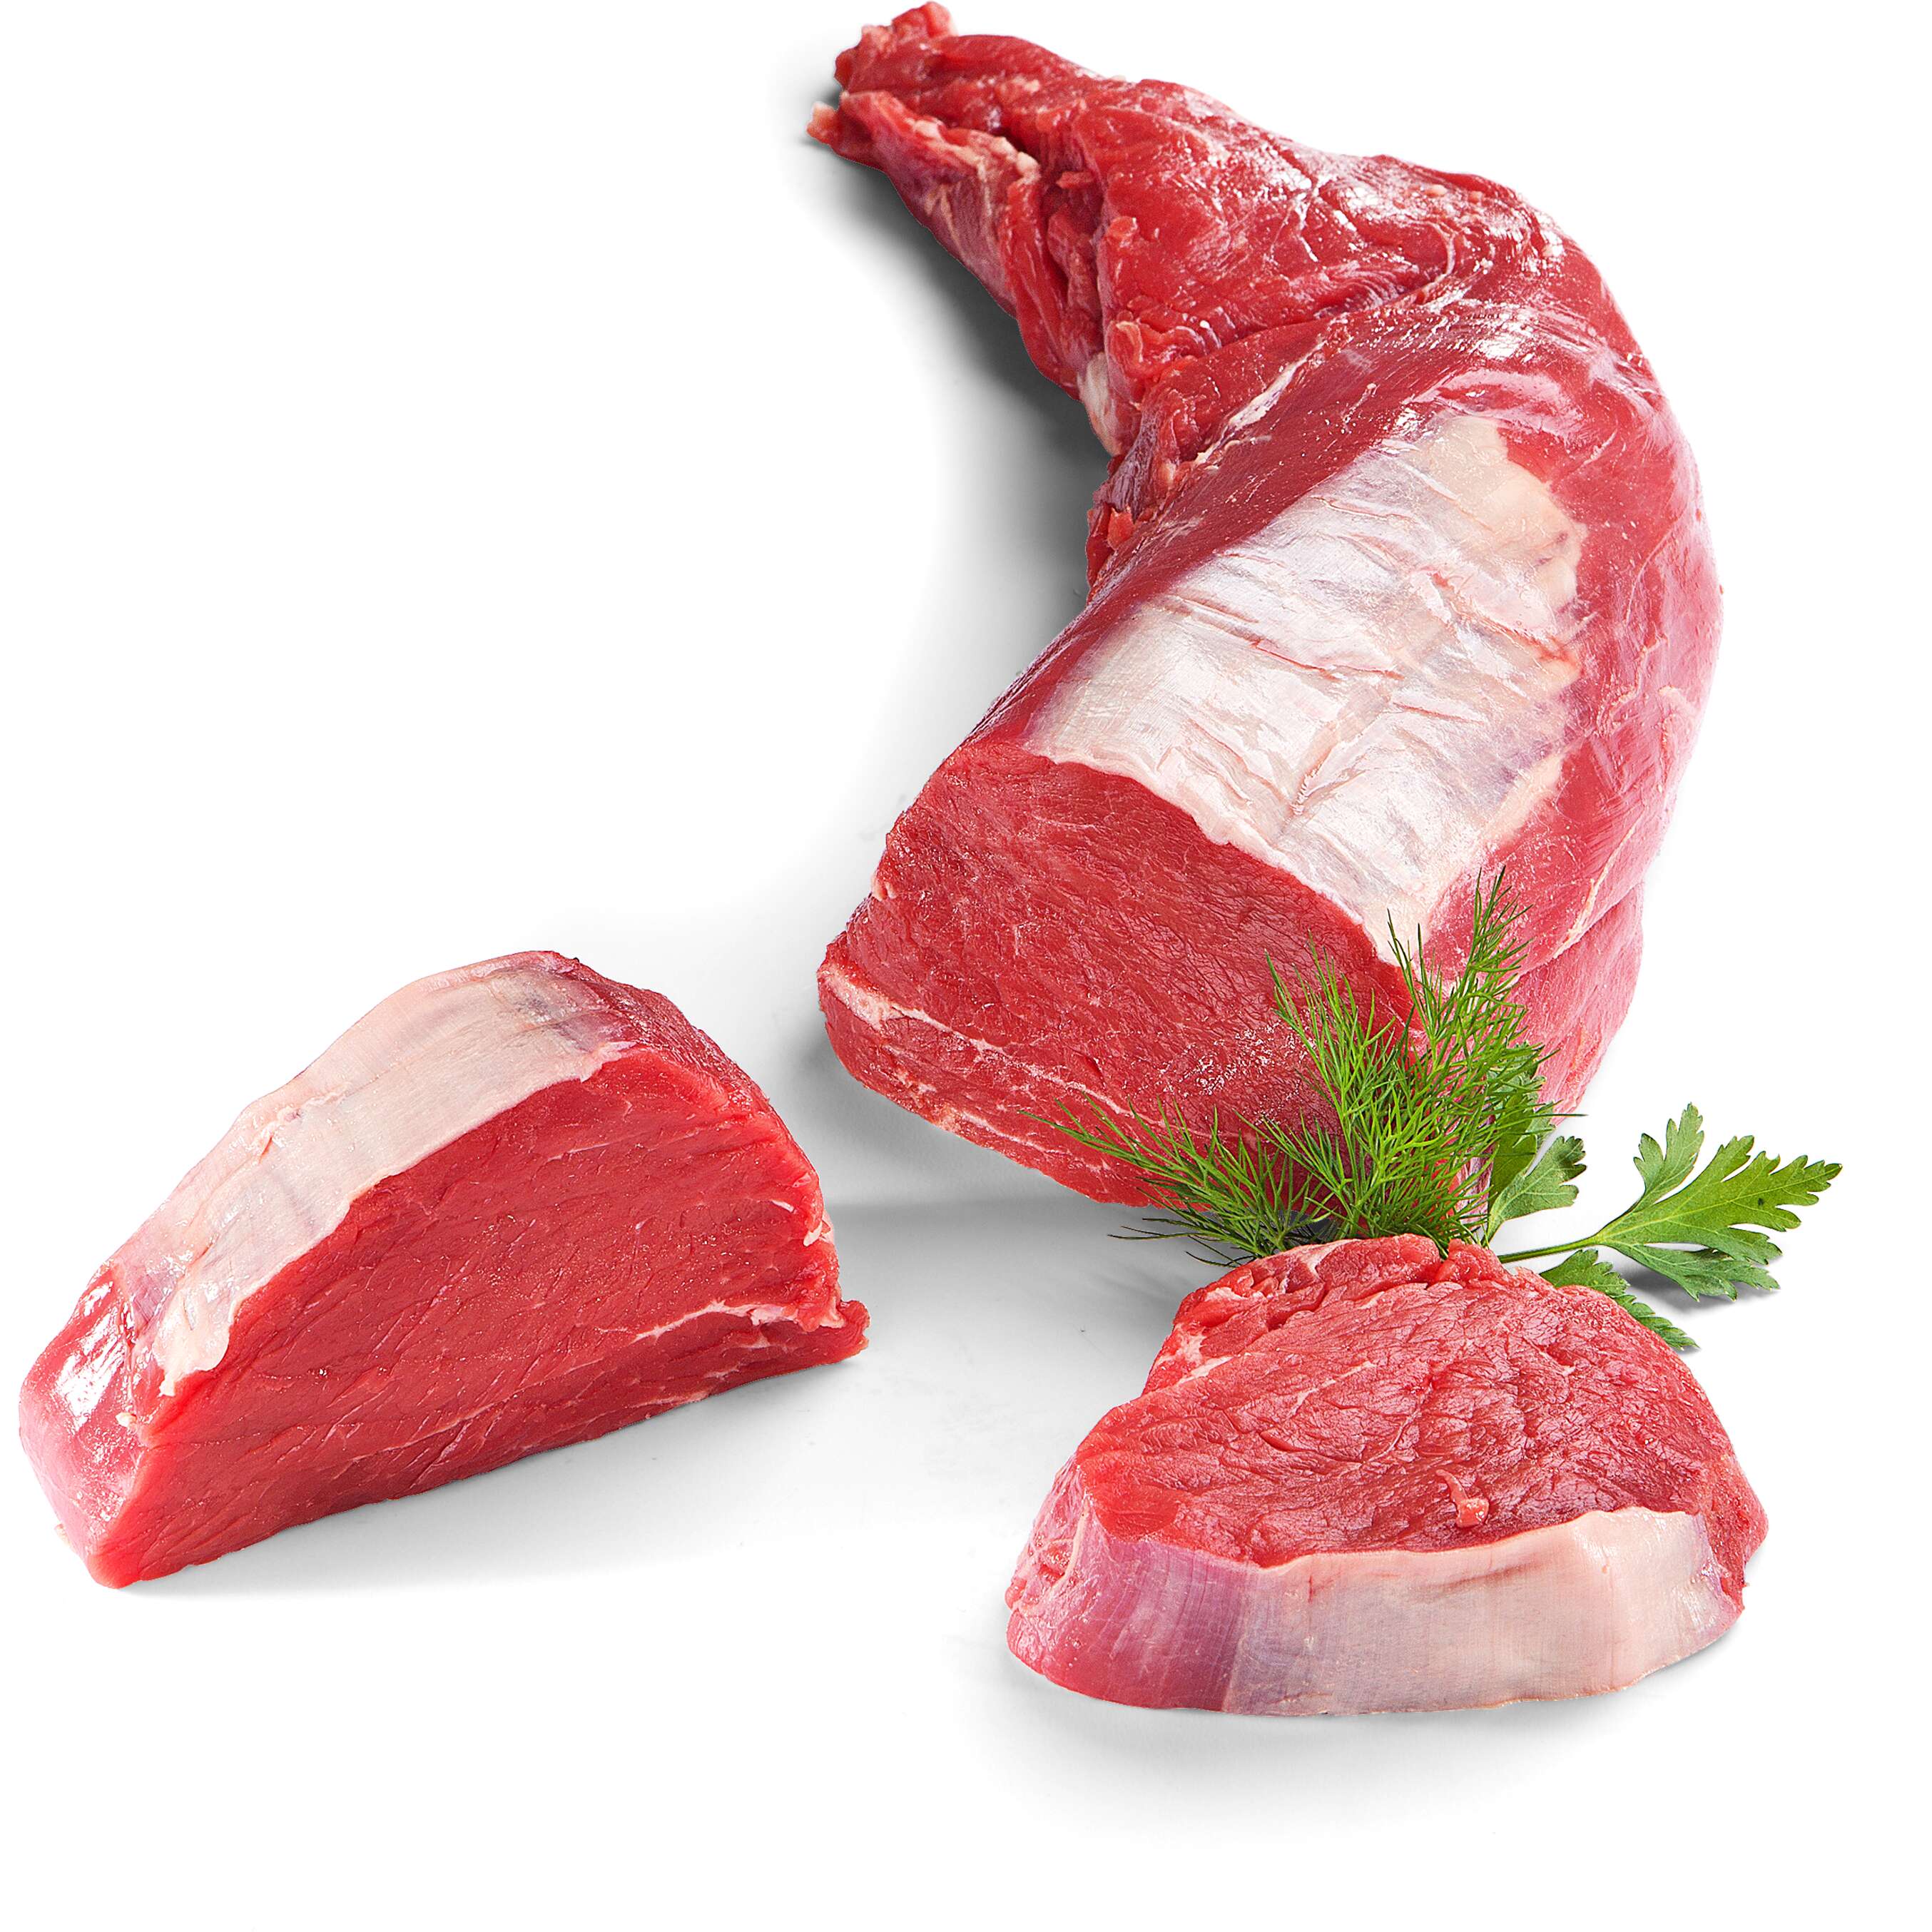 Fotografija ponude Juneći biftek u komadu 1 kg